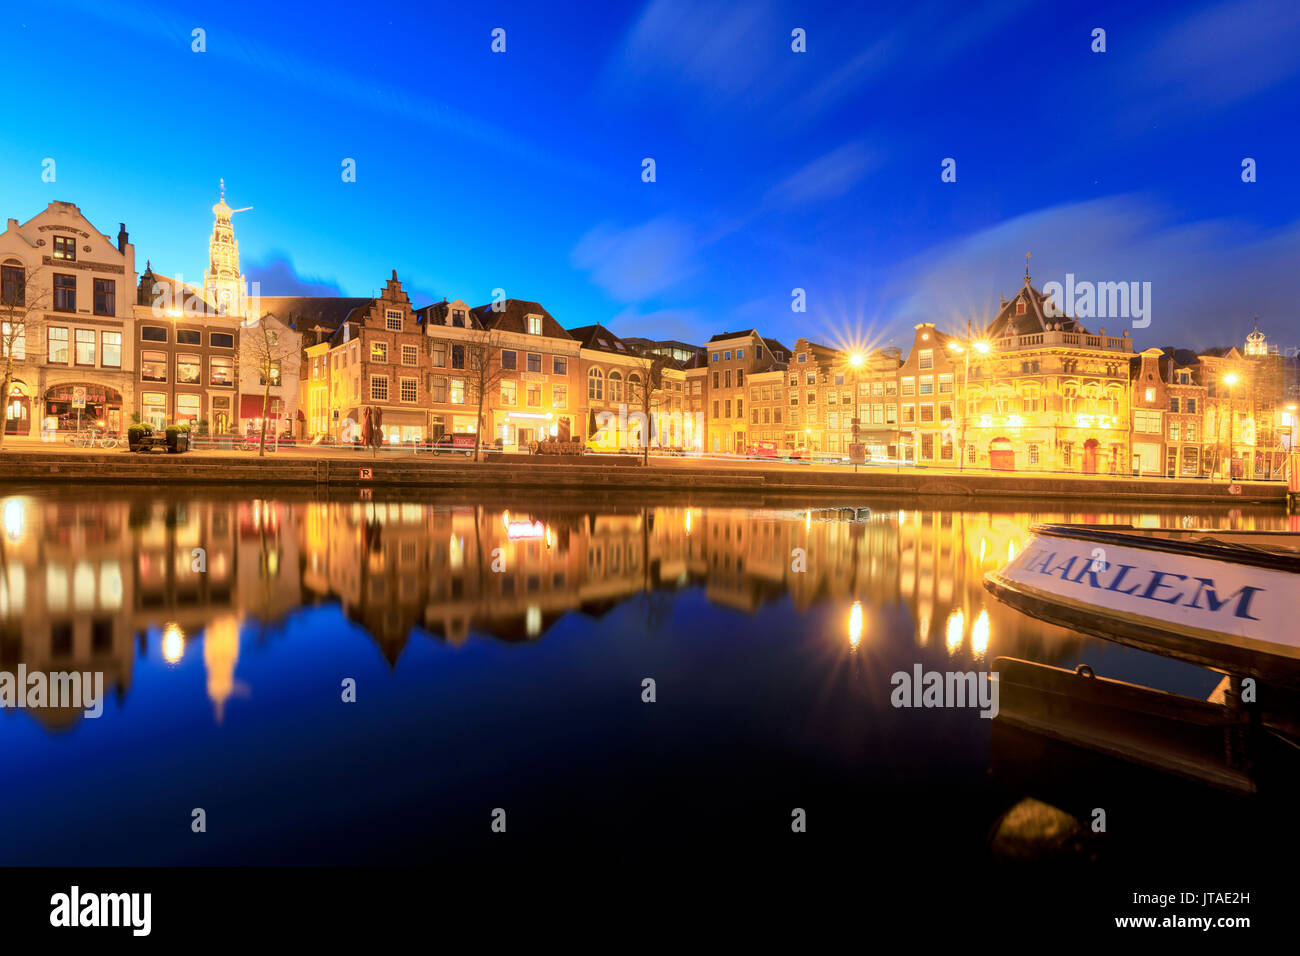 Le crépuscule s'allume maisons typiques reflétée dans un canal de la rivière Spaarne, Haarlem, Hollande du Nord, les Pays-Bas, Europe Banque D'Images